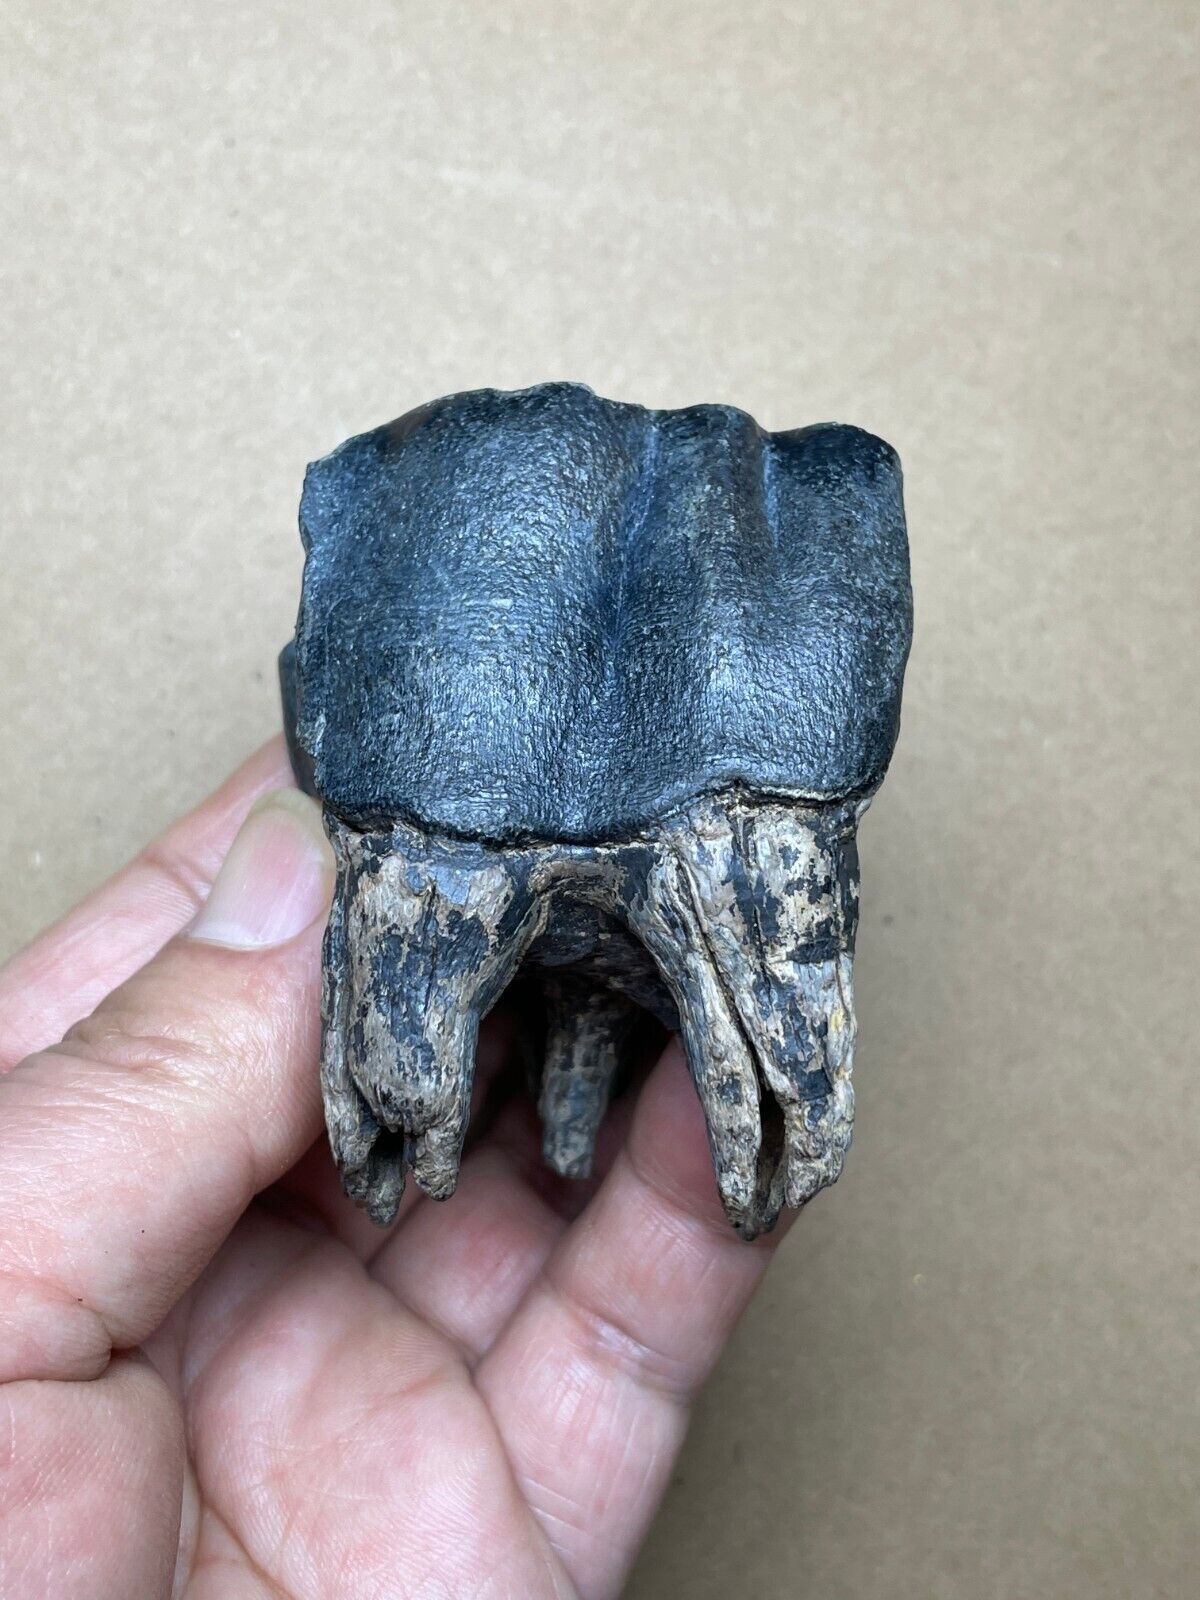 130g Ice Age large mammal tooth specimen Pleistocene